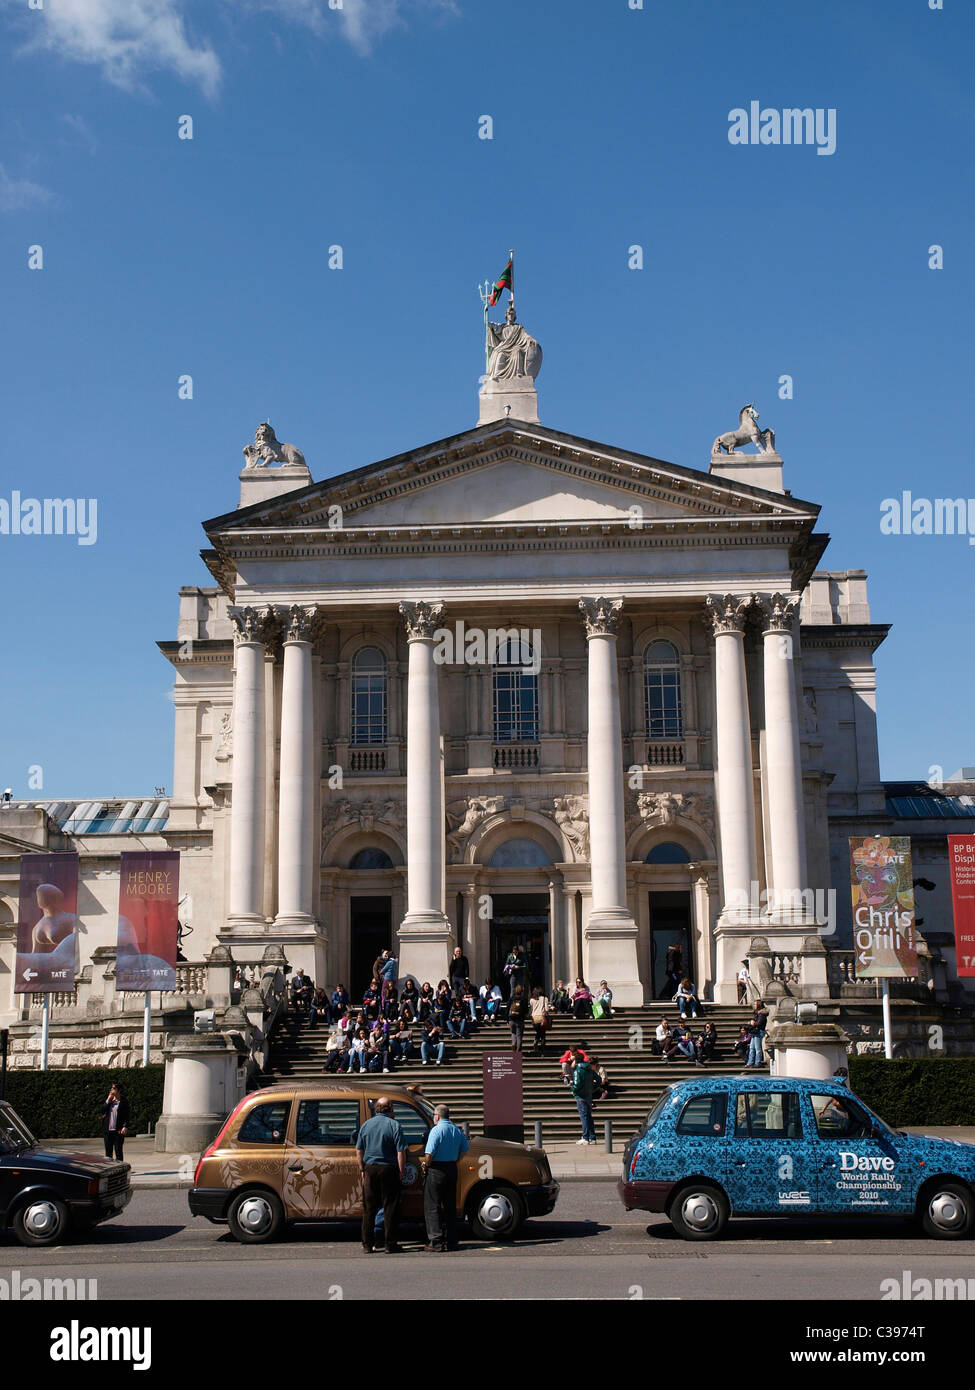 La galerie d'art Tate Britain pour l'art britannique de 1500 à nos jours. Millbank London England Banque D'Images